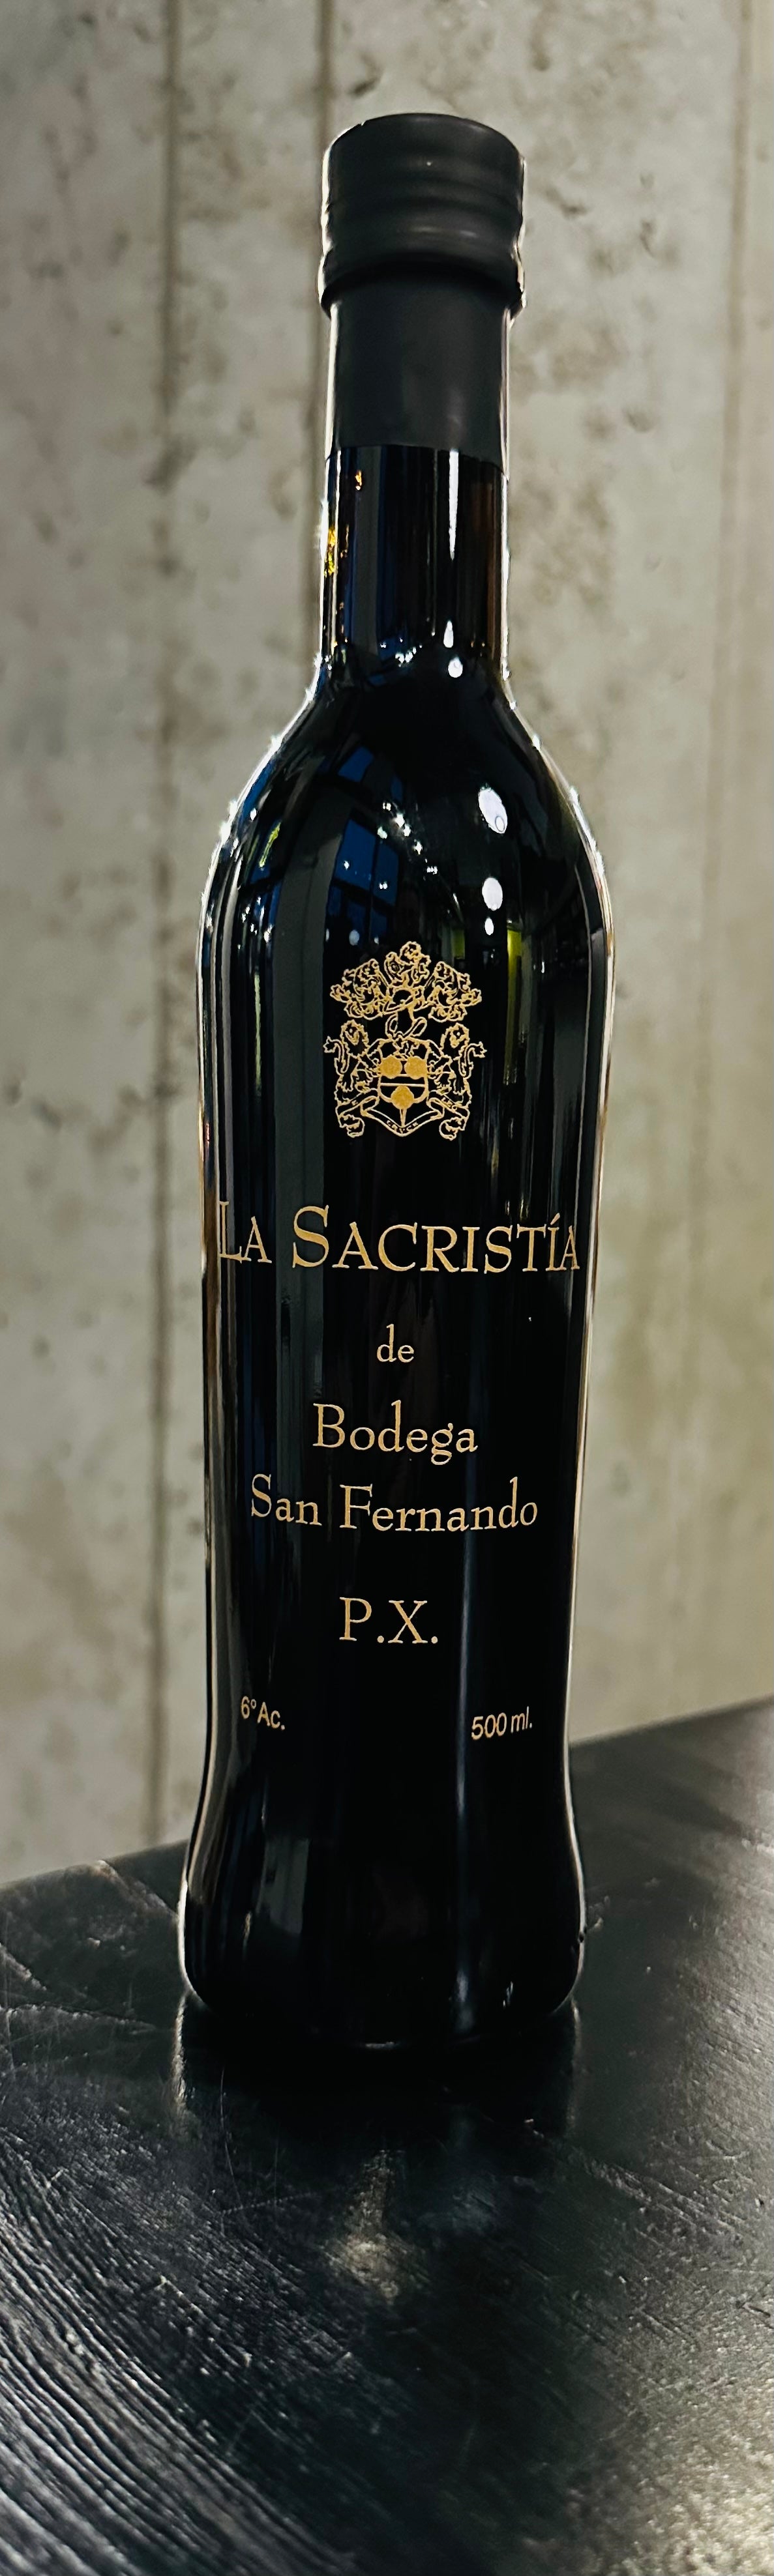 Vinagres de Yema "La Sacristía de Bodega San Fernando" P.X. Vinegar